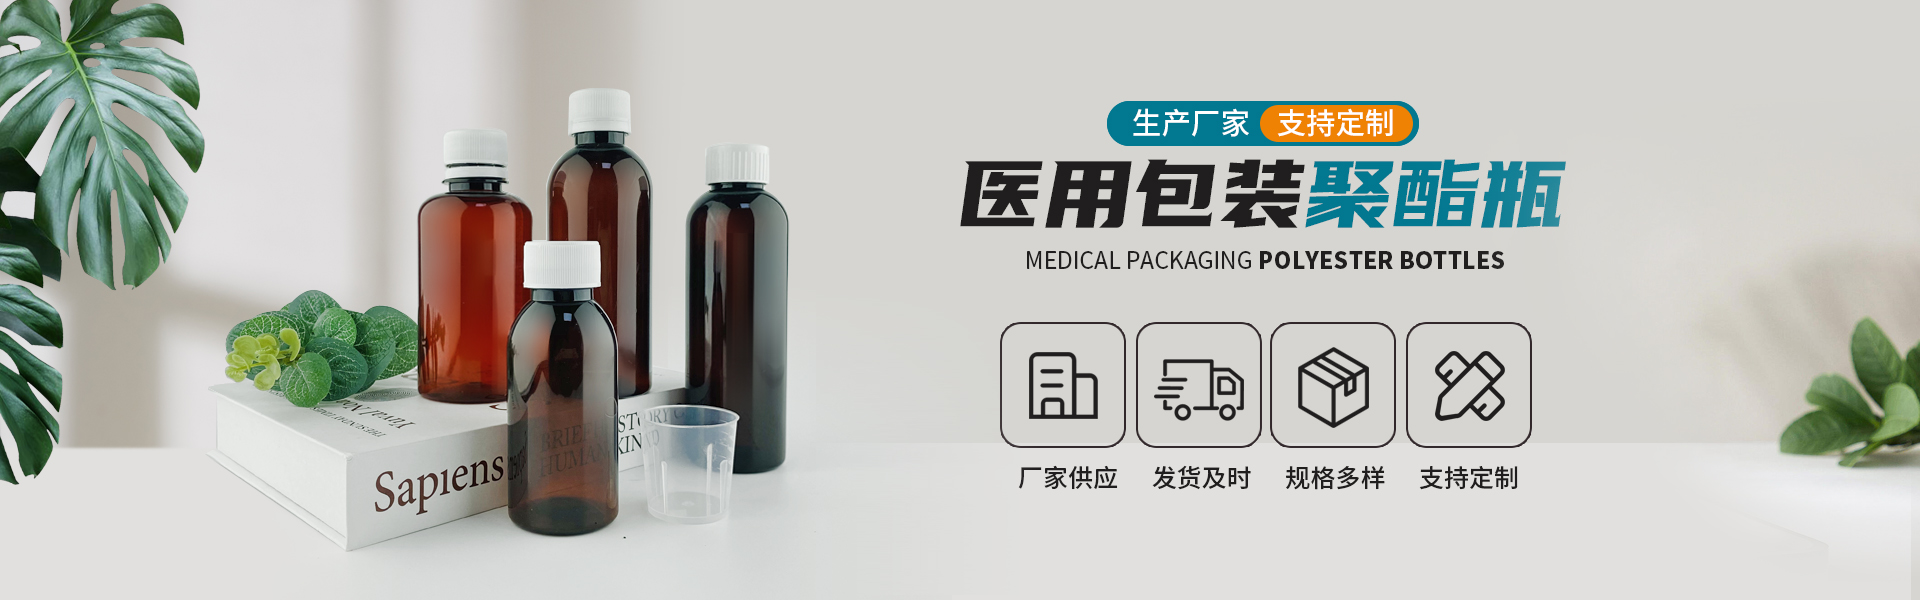 医用包装塑料瓶